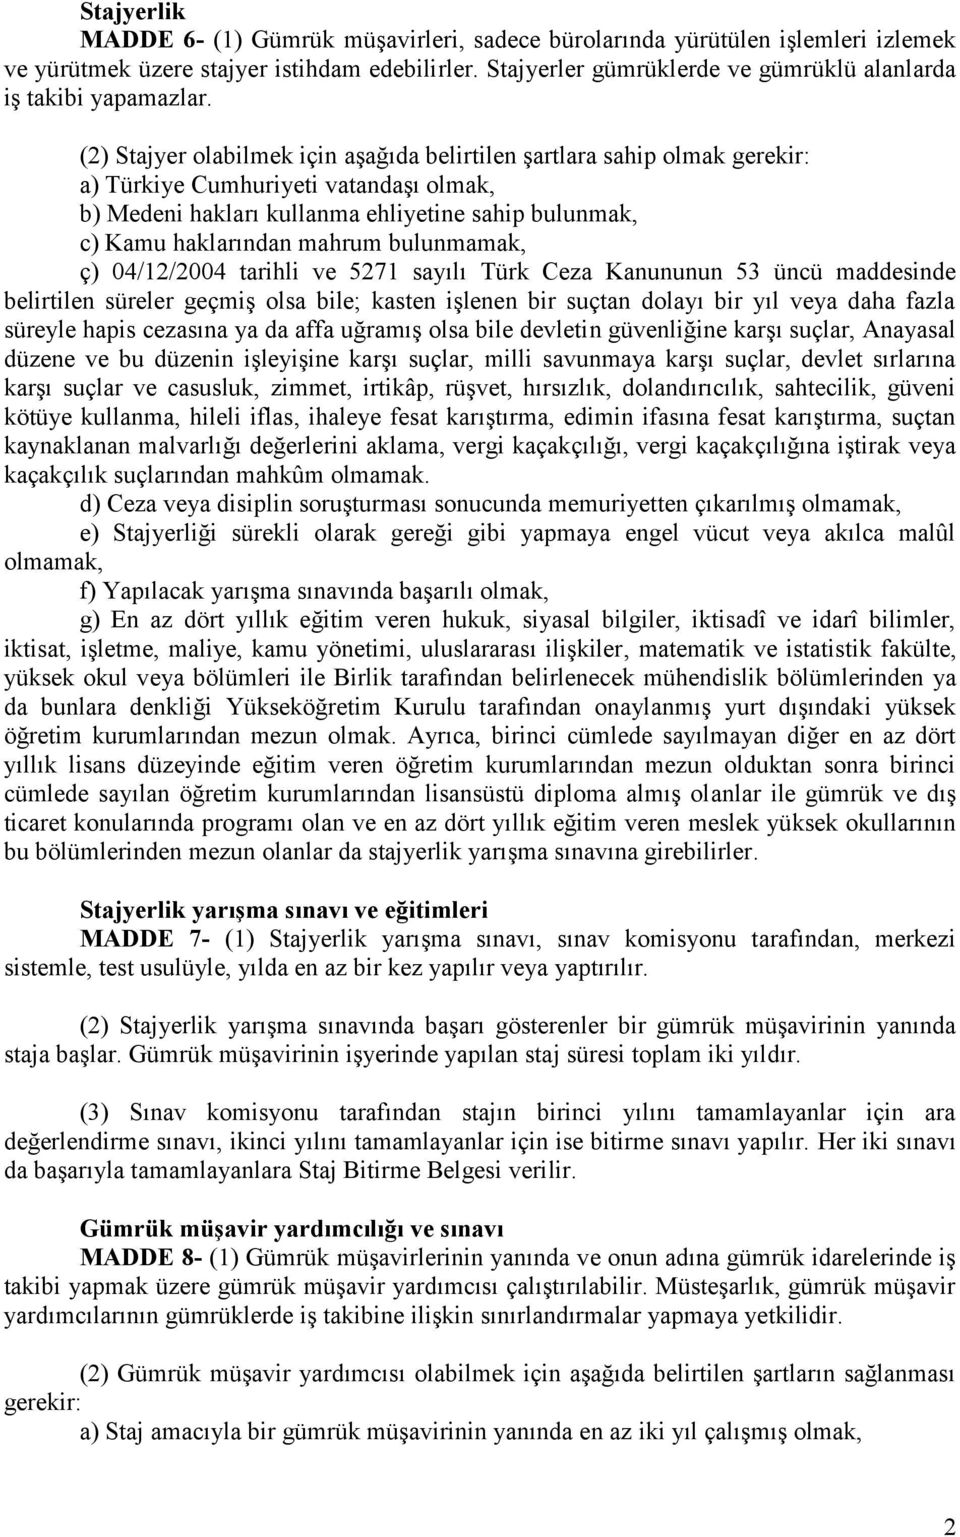 (2) Stajyer olabilmek için aşağıda belirtilen şartlara sahip olmak gerekir: a) Türkiye Cumhuriyeti vatandaşı olmak, b) Medeni hakları kullanma ehliyetine sahip bulunmak, c) Kamu haklarından mahrum